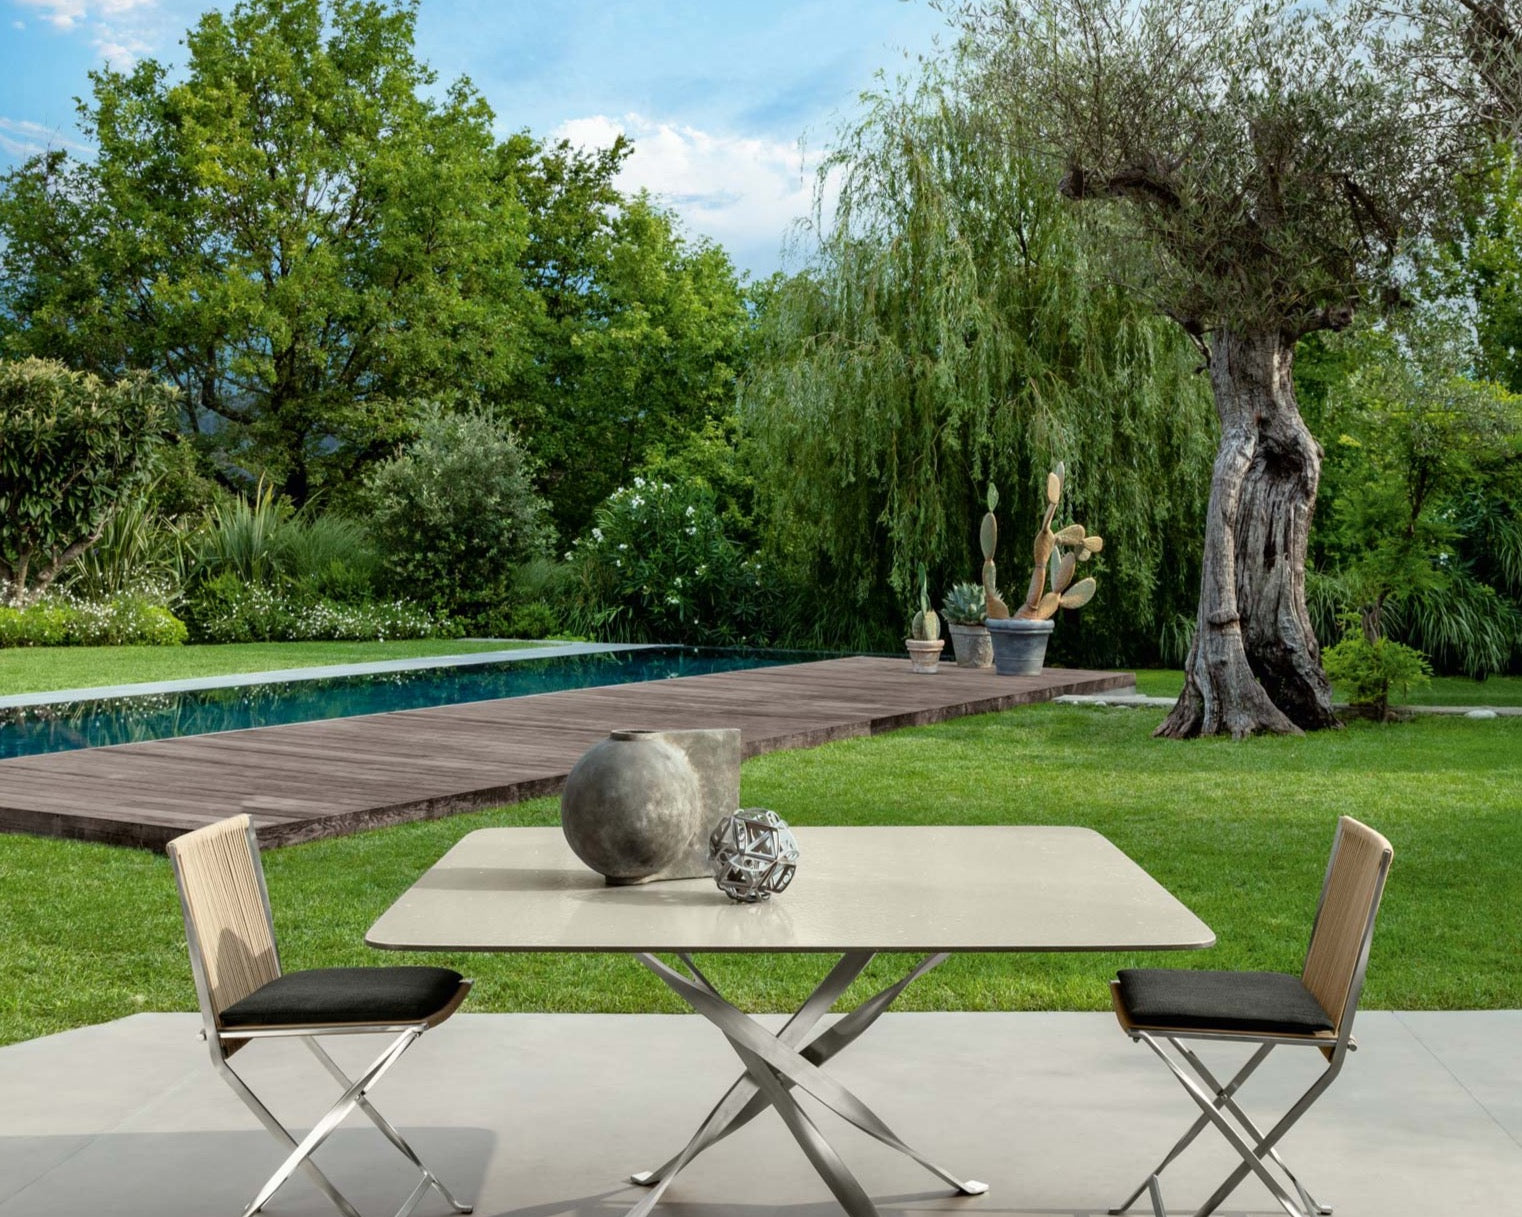 table_jardin_aluminium_pied_croise